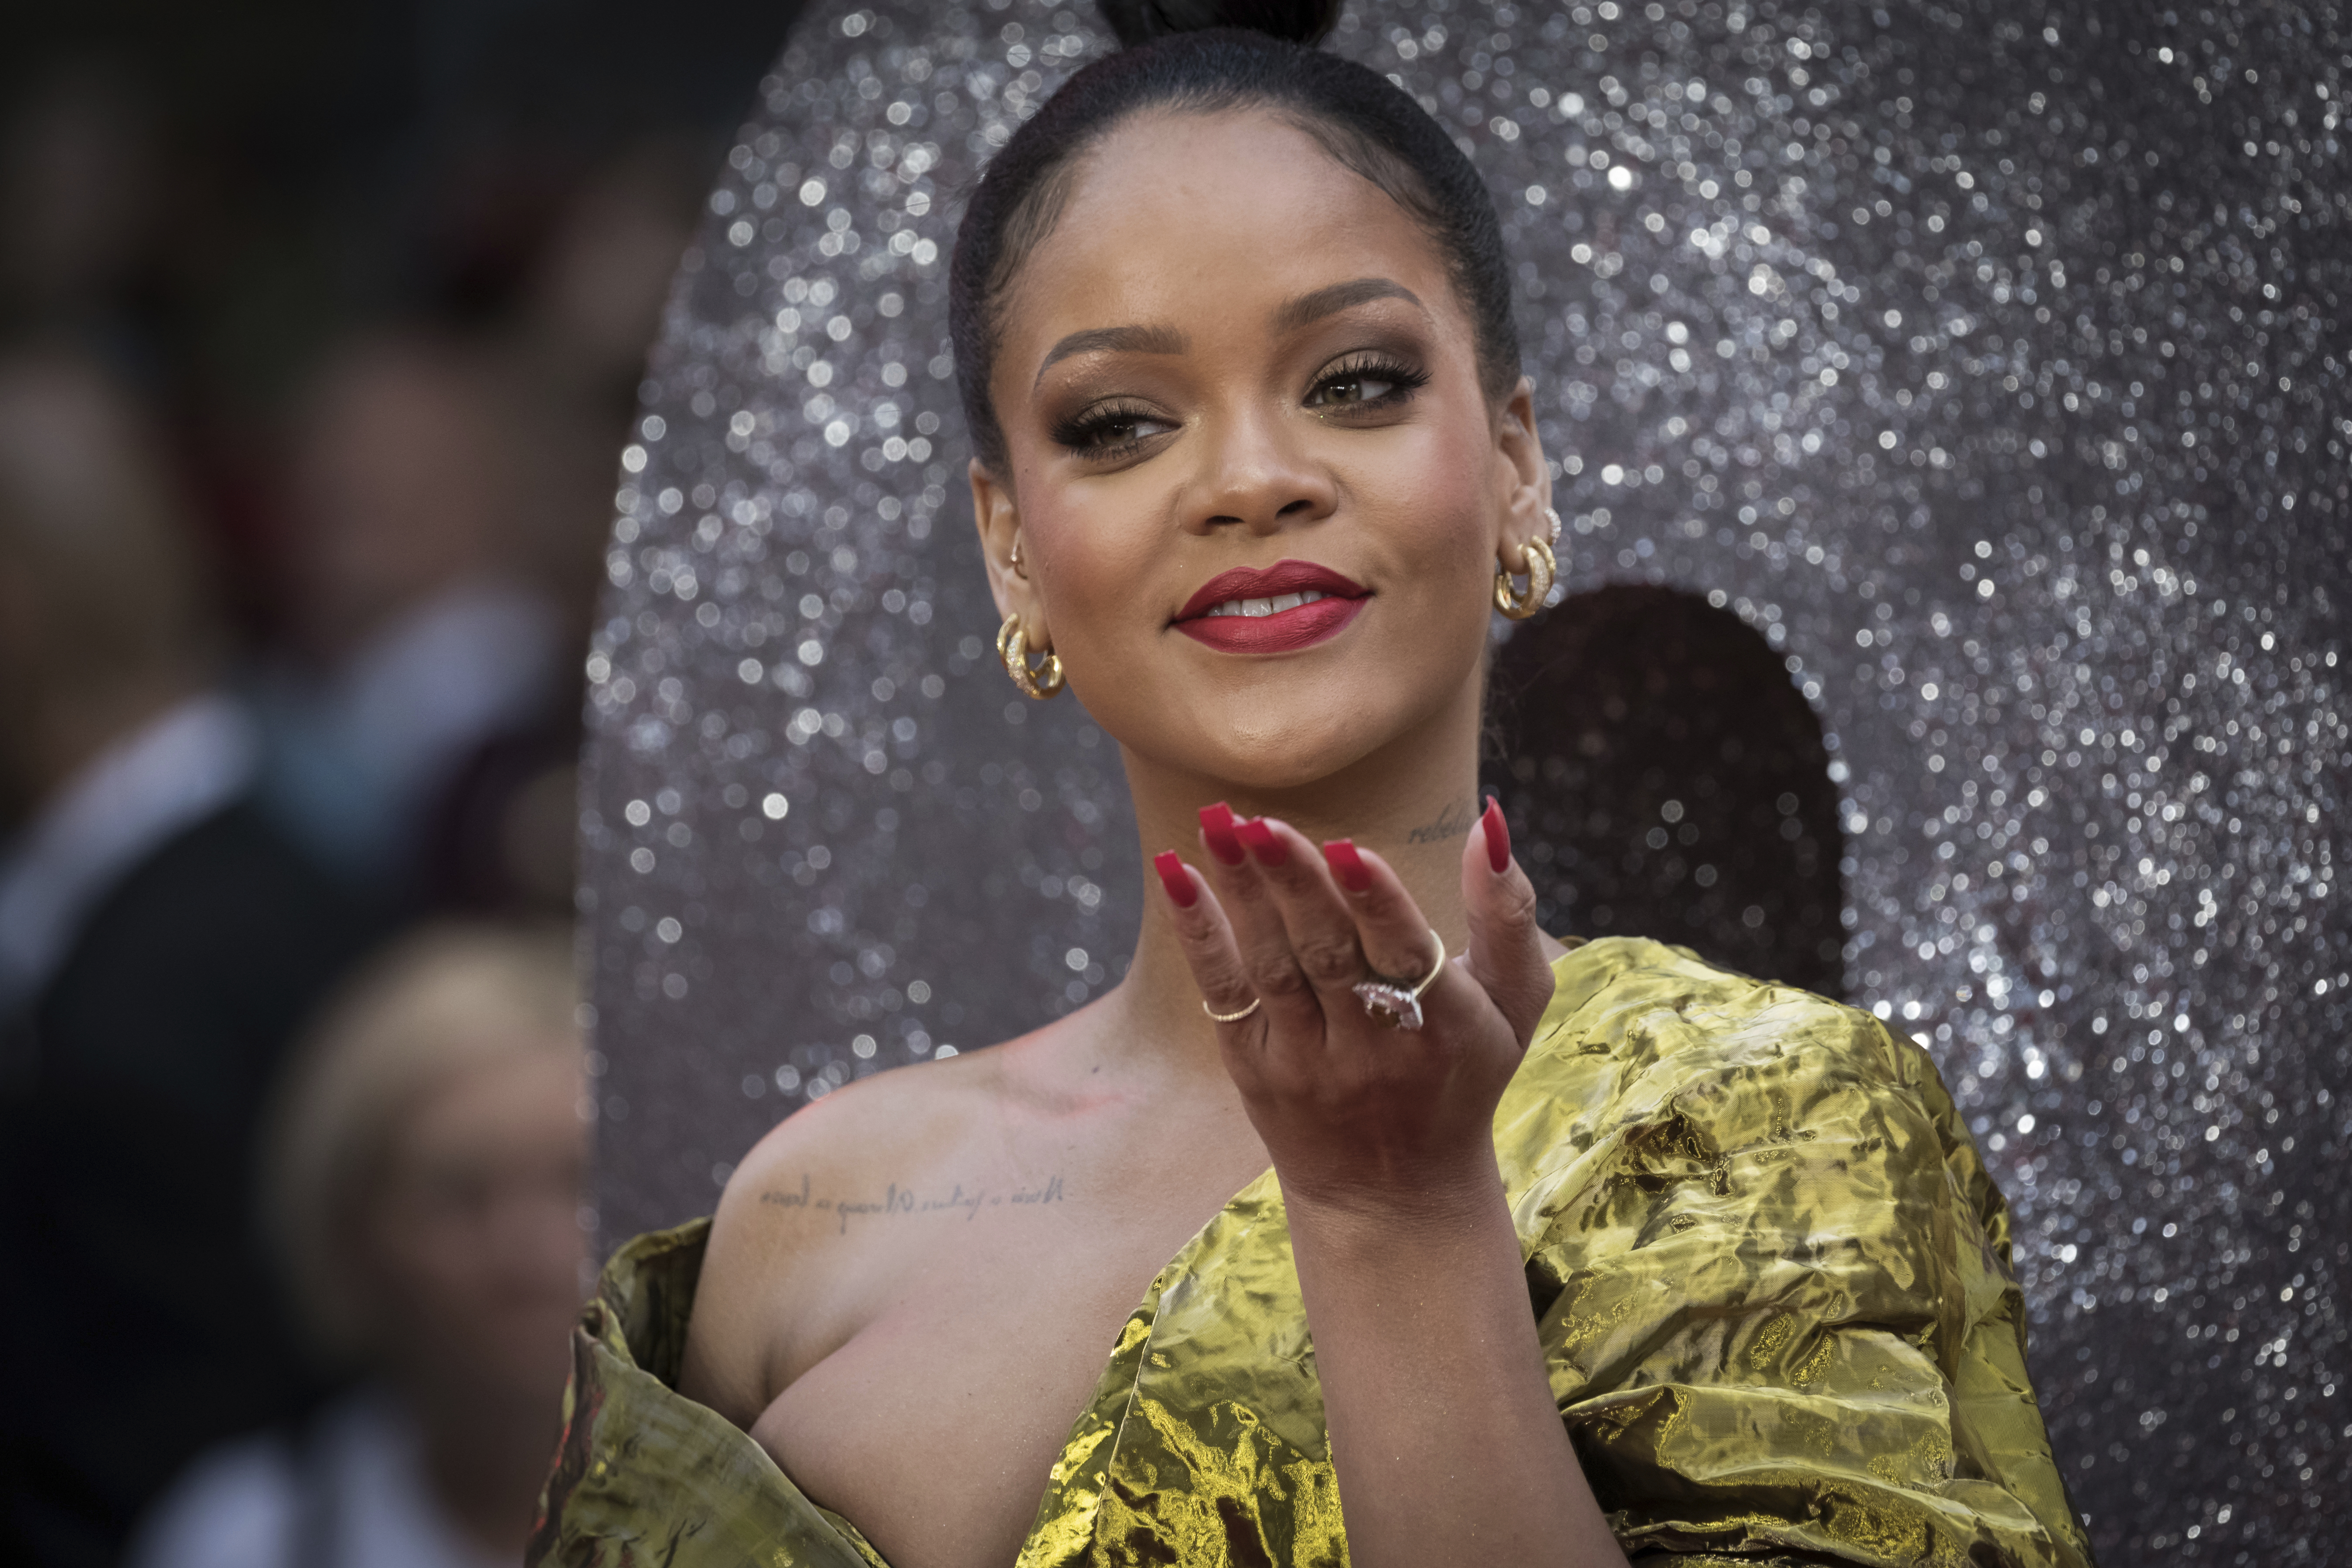 Totális mozgósítás: Rihanna is felszólította a rajongóit, hogy regisztráljanak a választásra